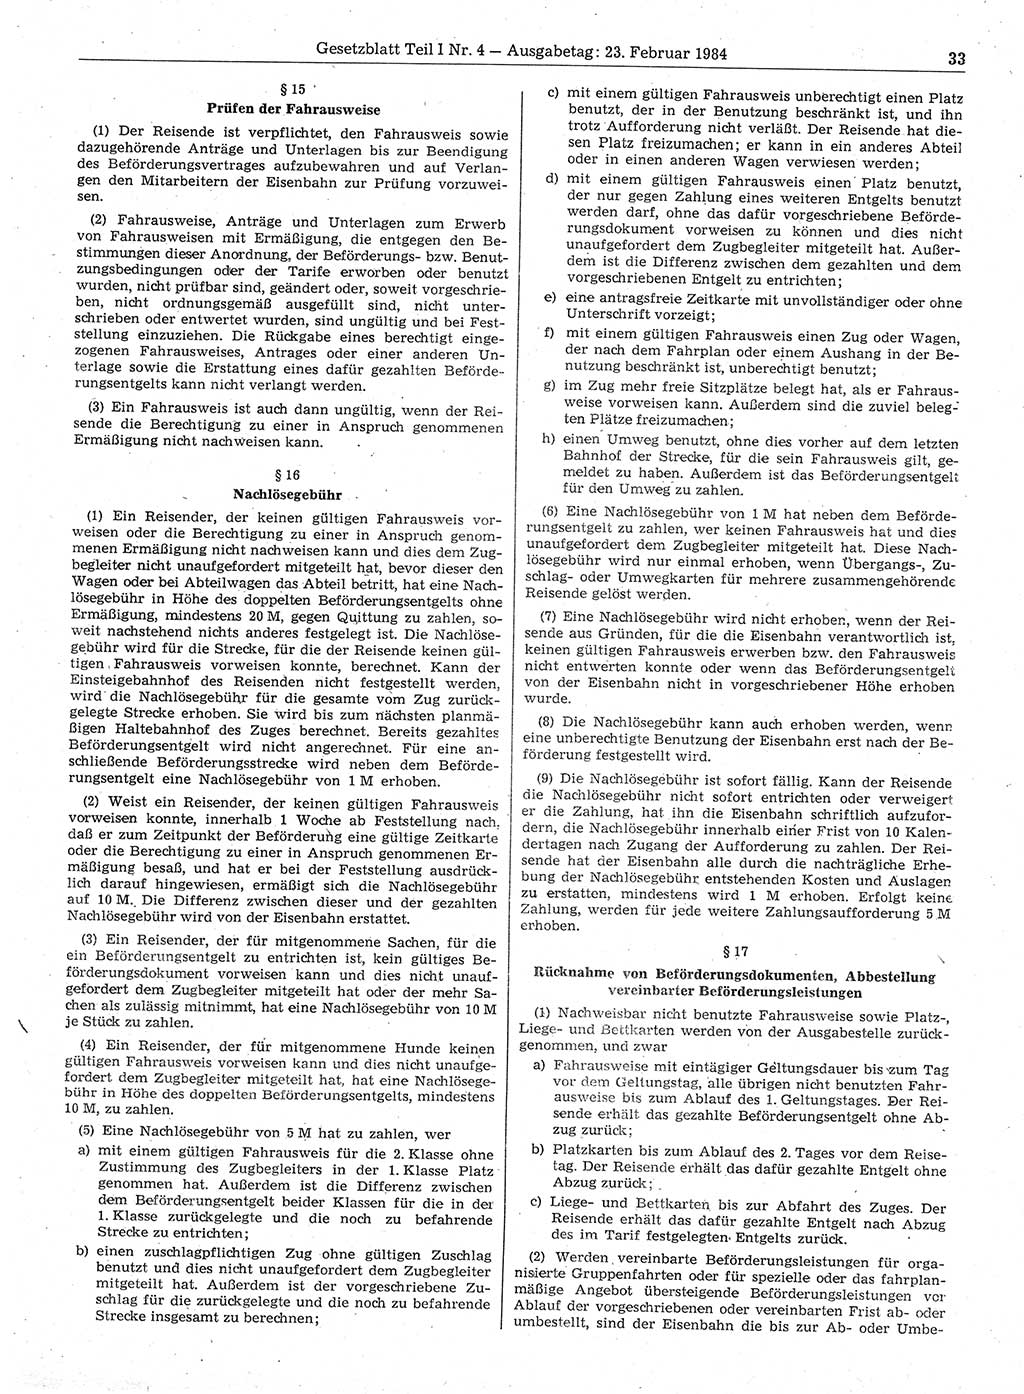 Gesetzblatt (GBl.) der Deutschen Demokratischen Republik (DDR) Teil Ⅰ 1984, Seite 33 (GBl. DDR Ⅰ 1984, S. 33)